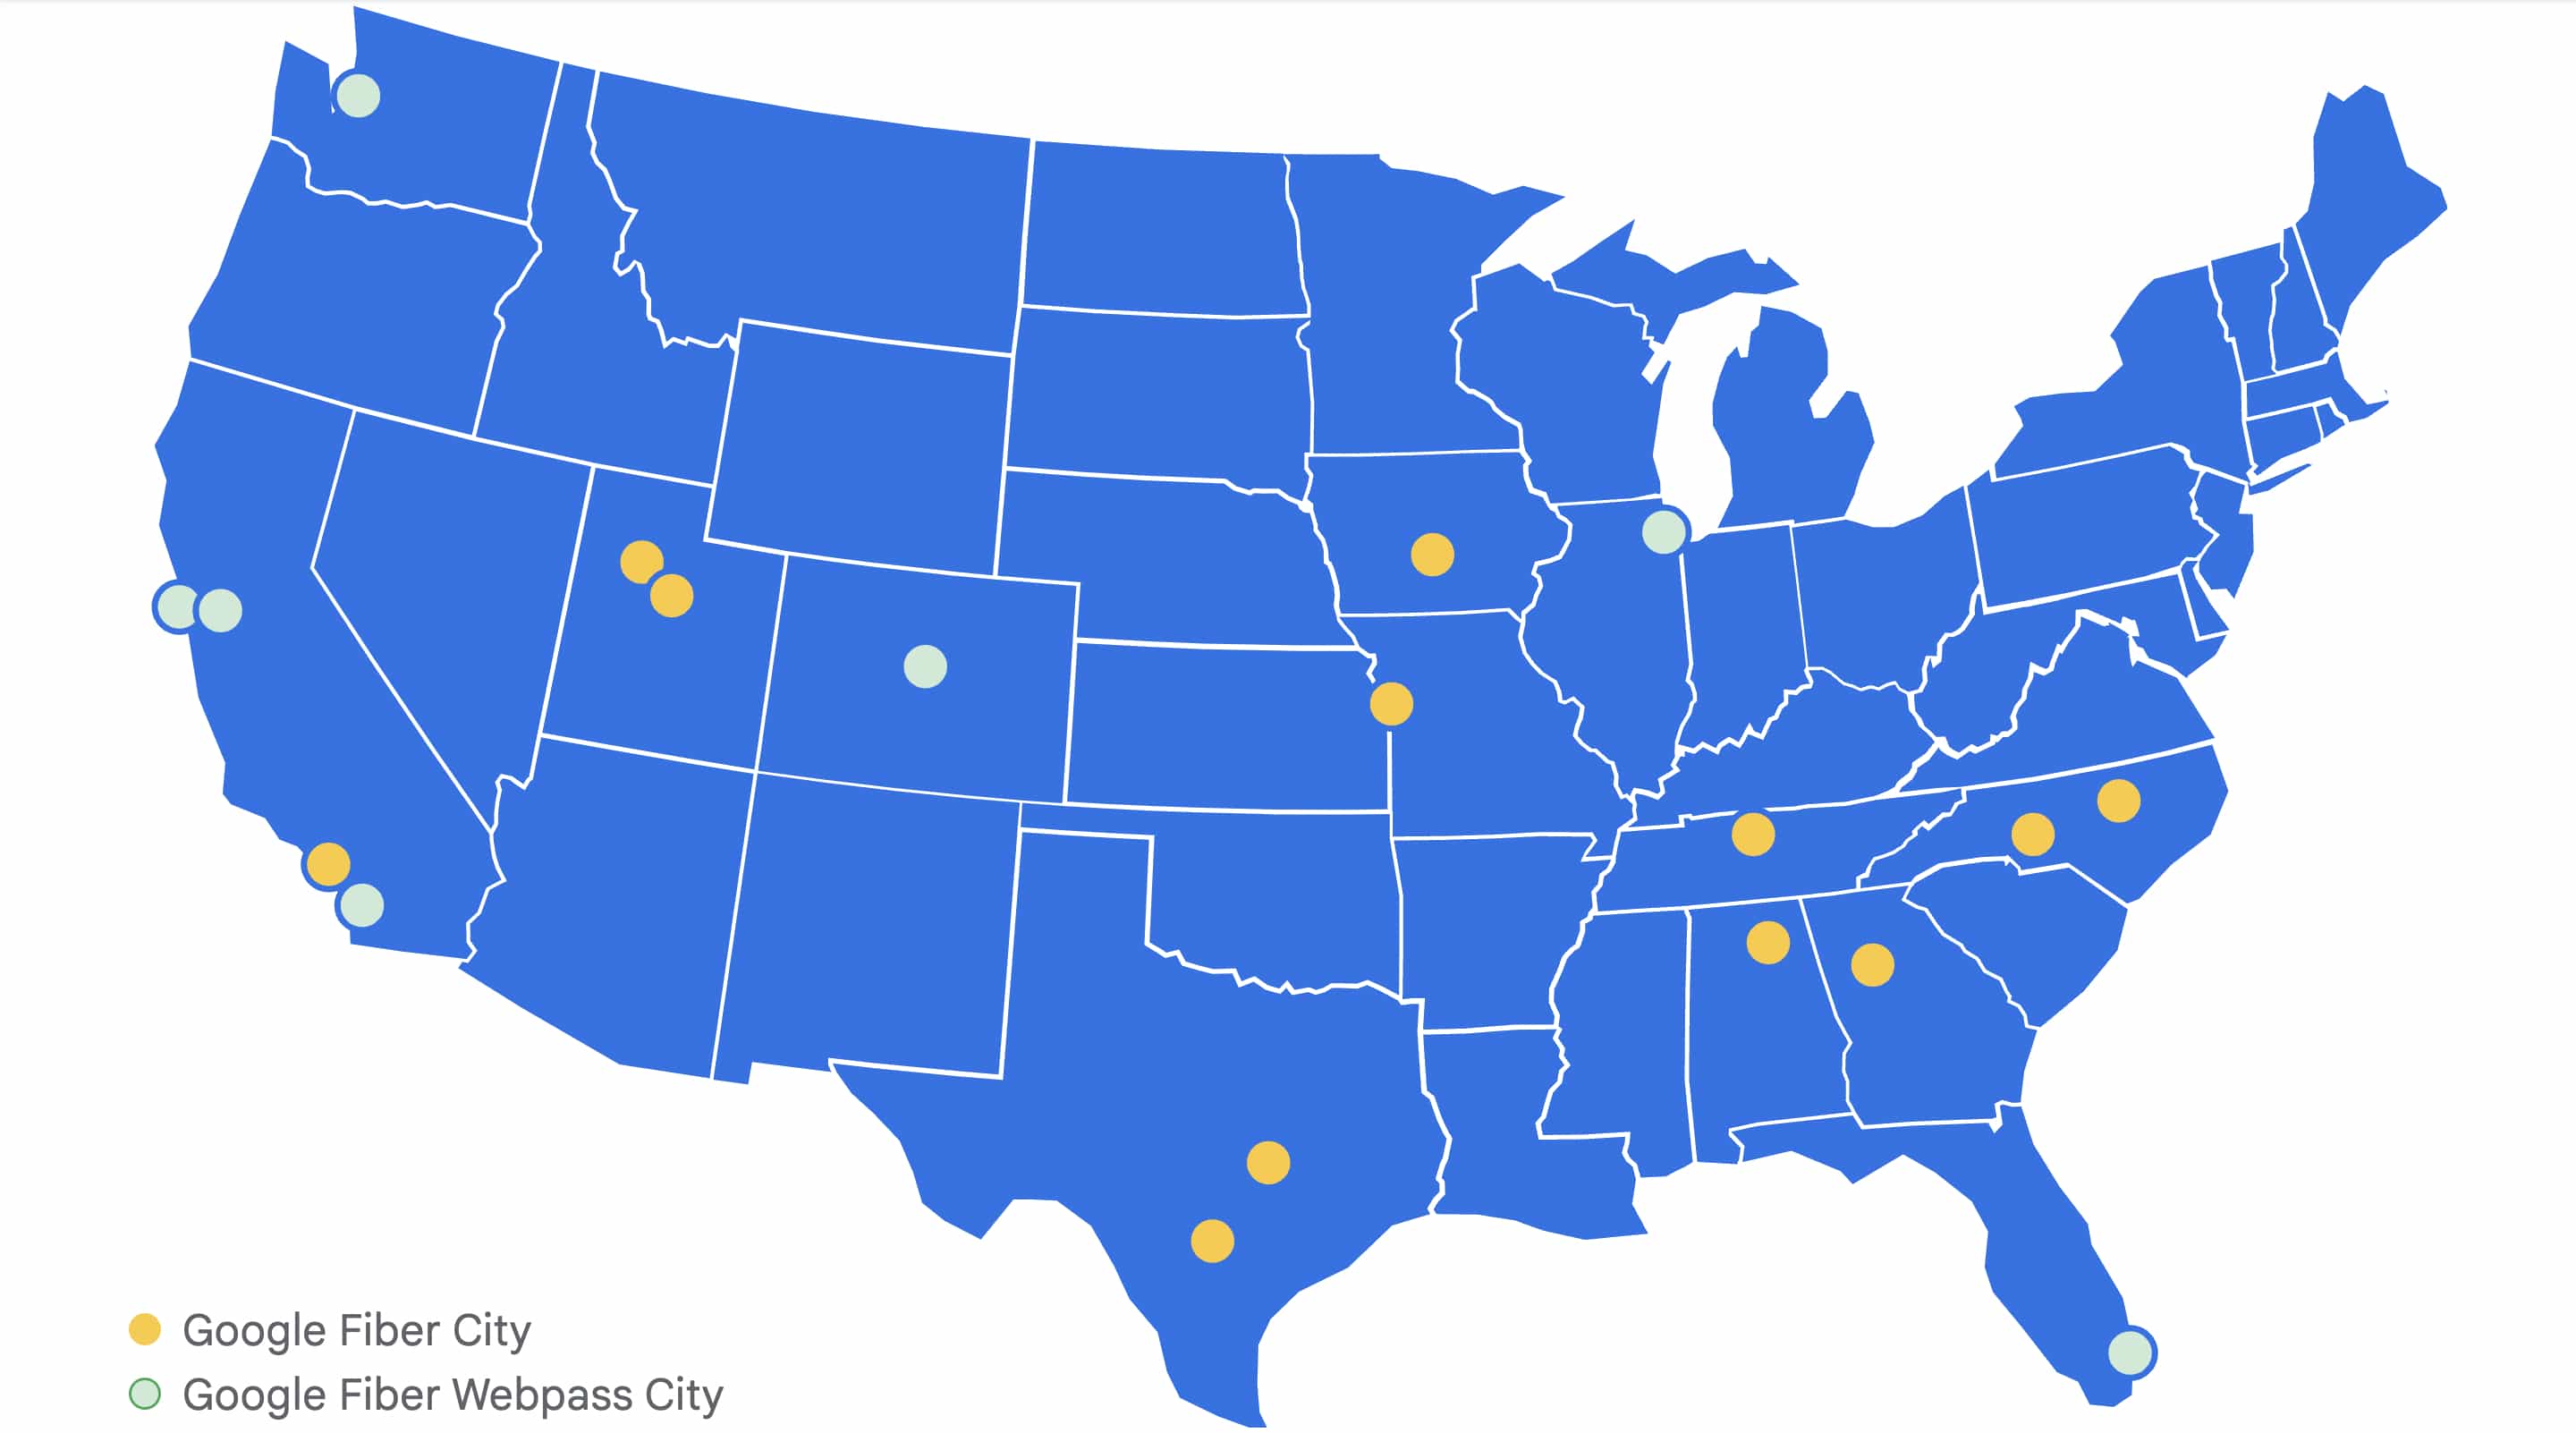 Google Fiber business cities